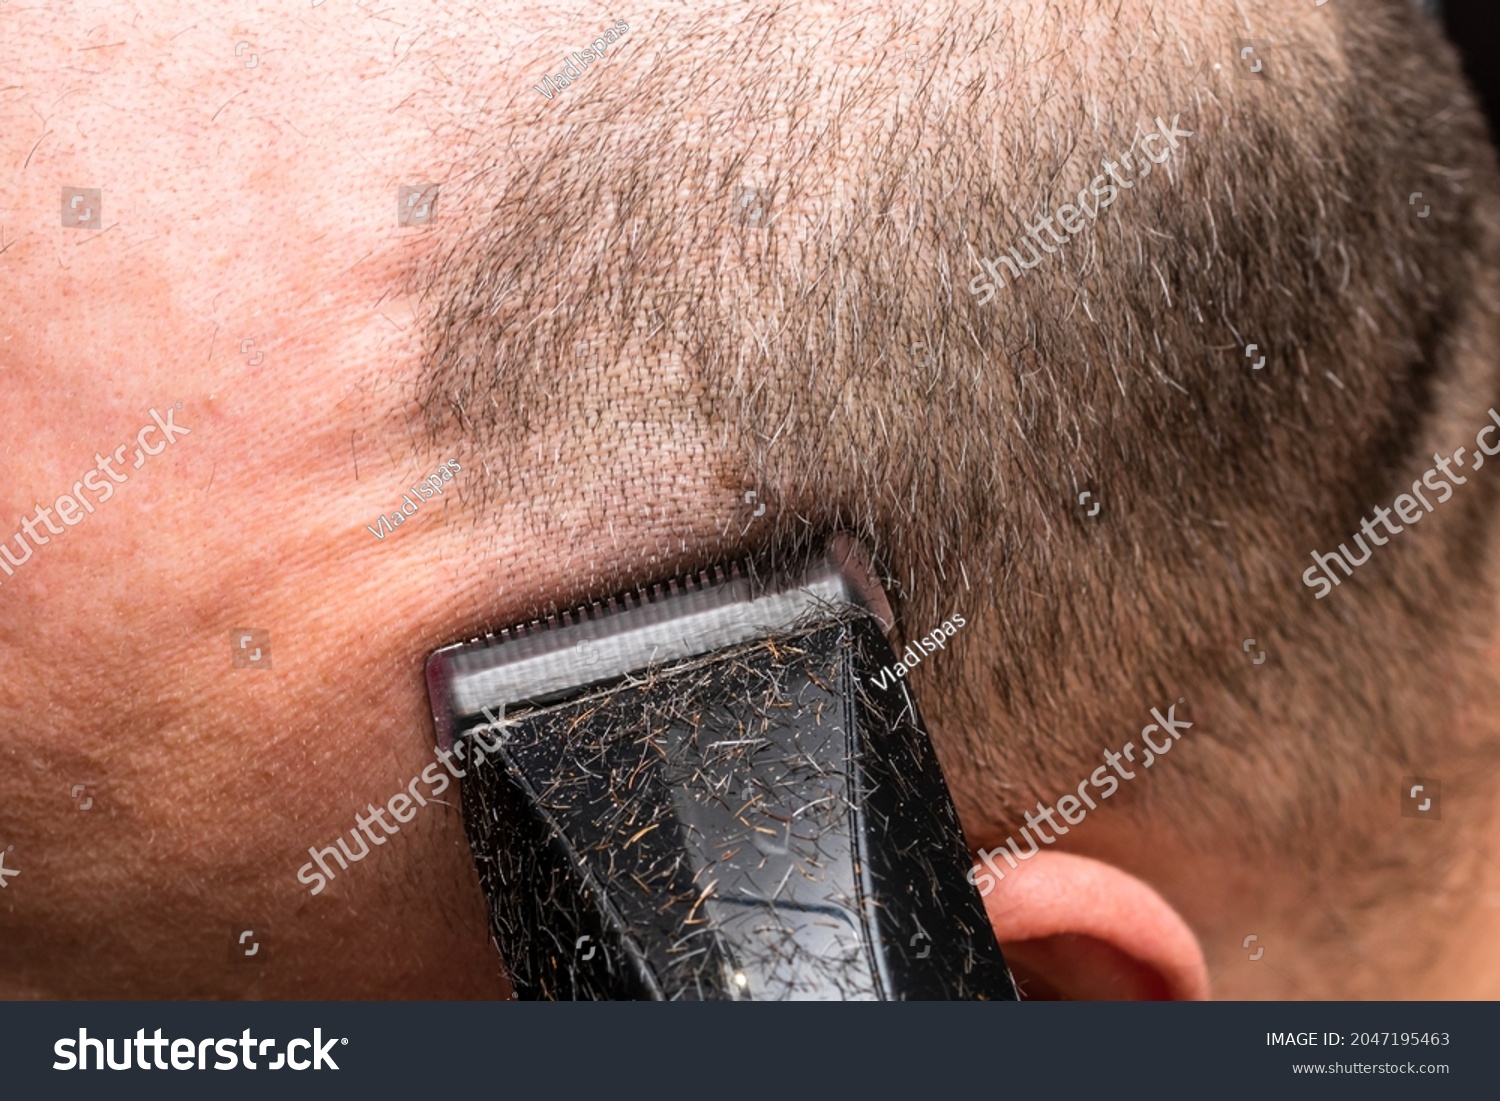 Man shaving or trimming his hair using a hair clipper #2047195463